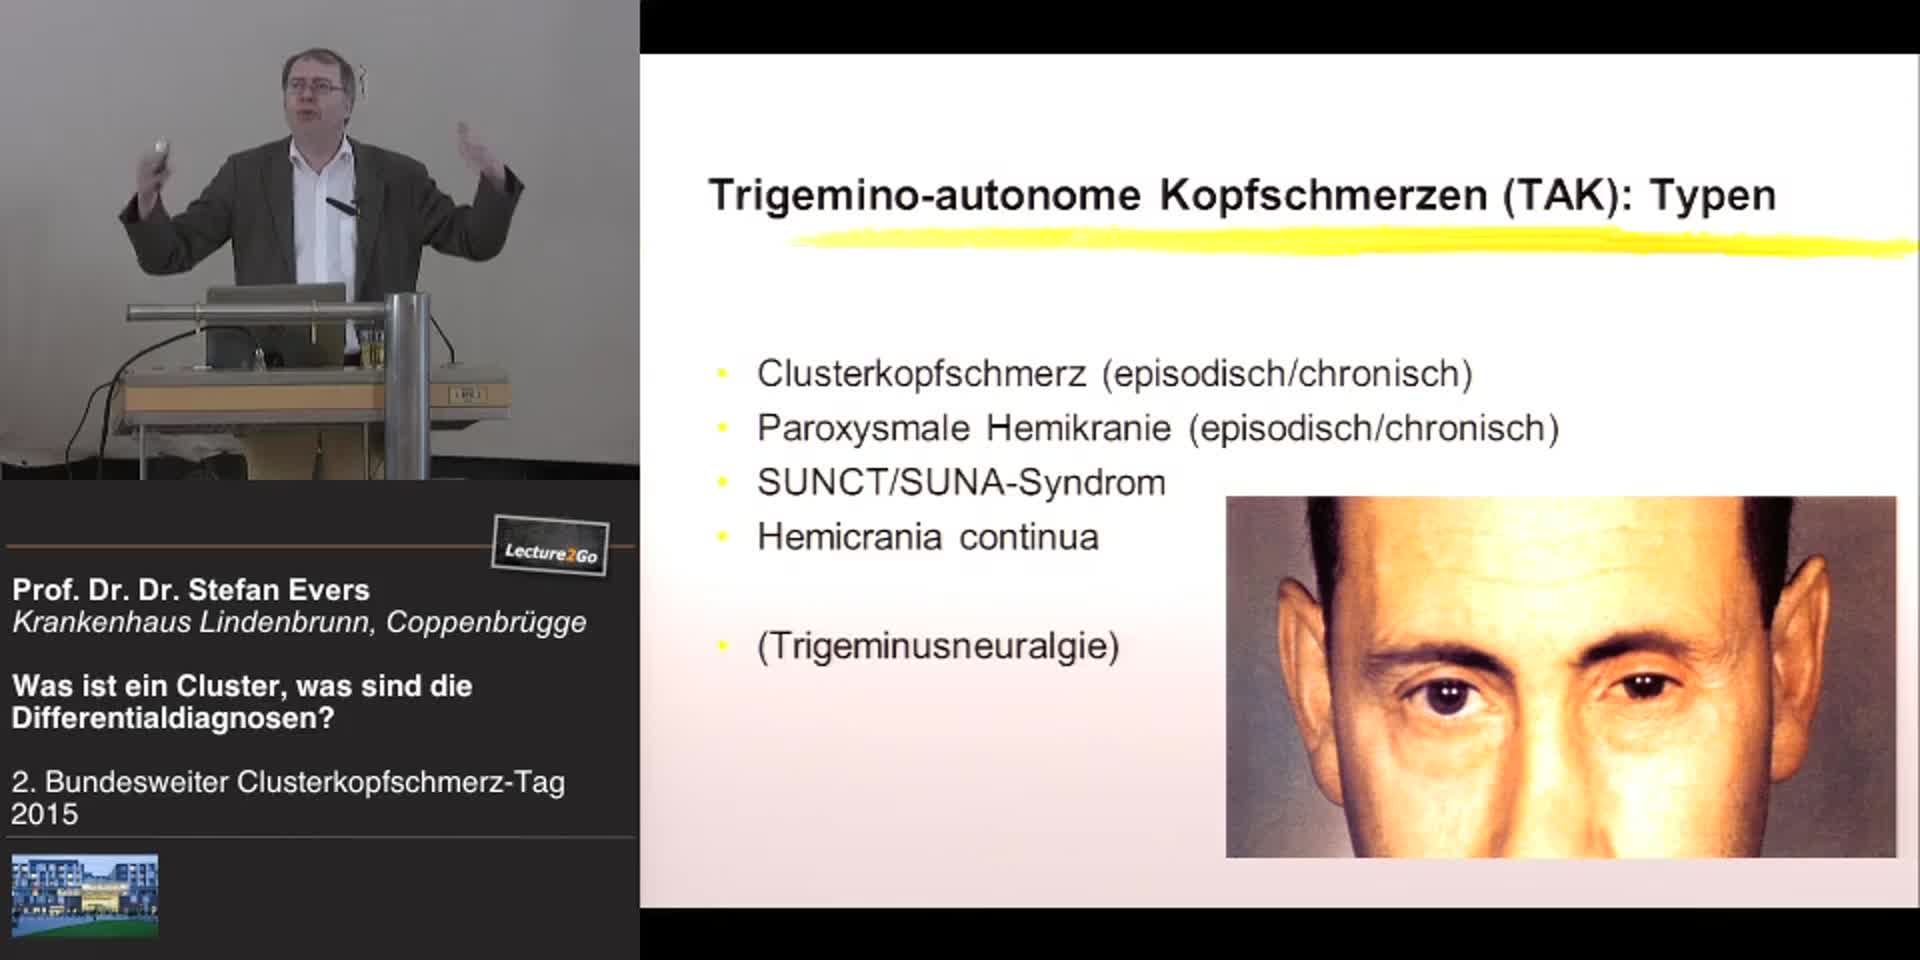 Differentialdiagnosen Cluster Kopfschmerz Tag Hamburg 2015 Doccheck